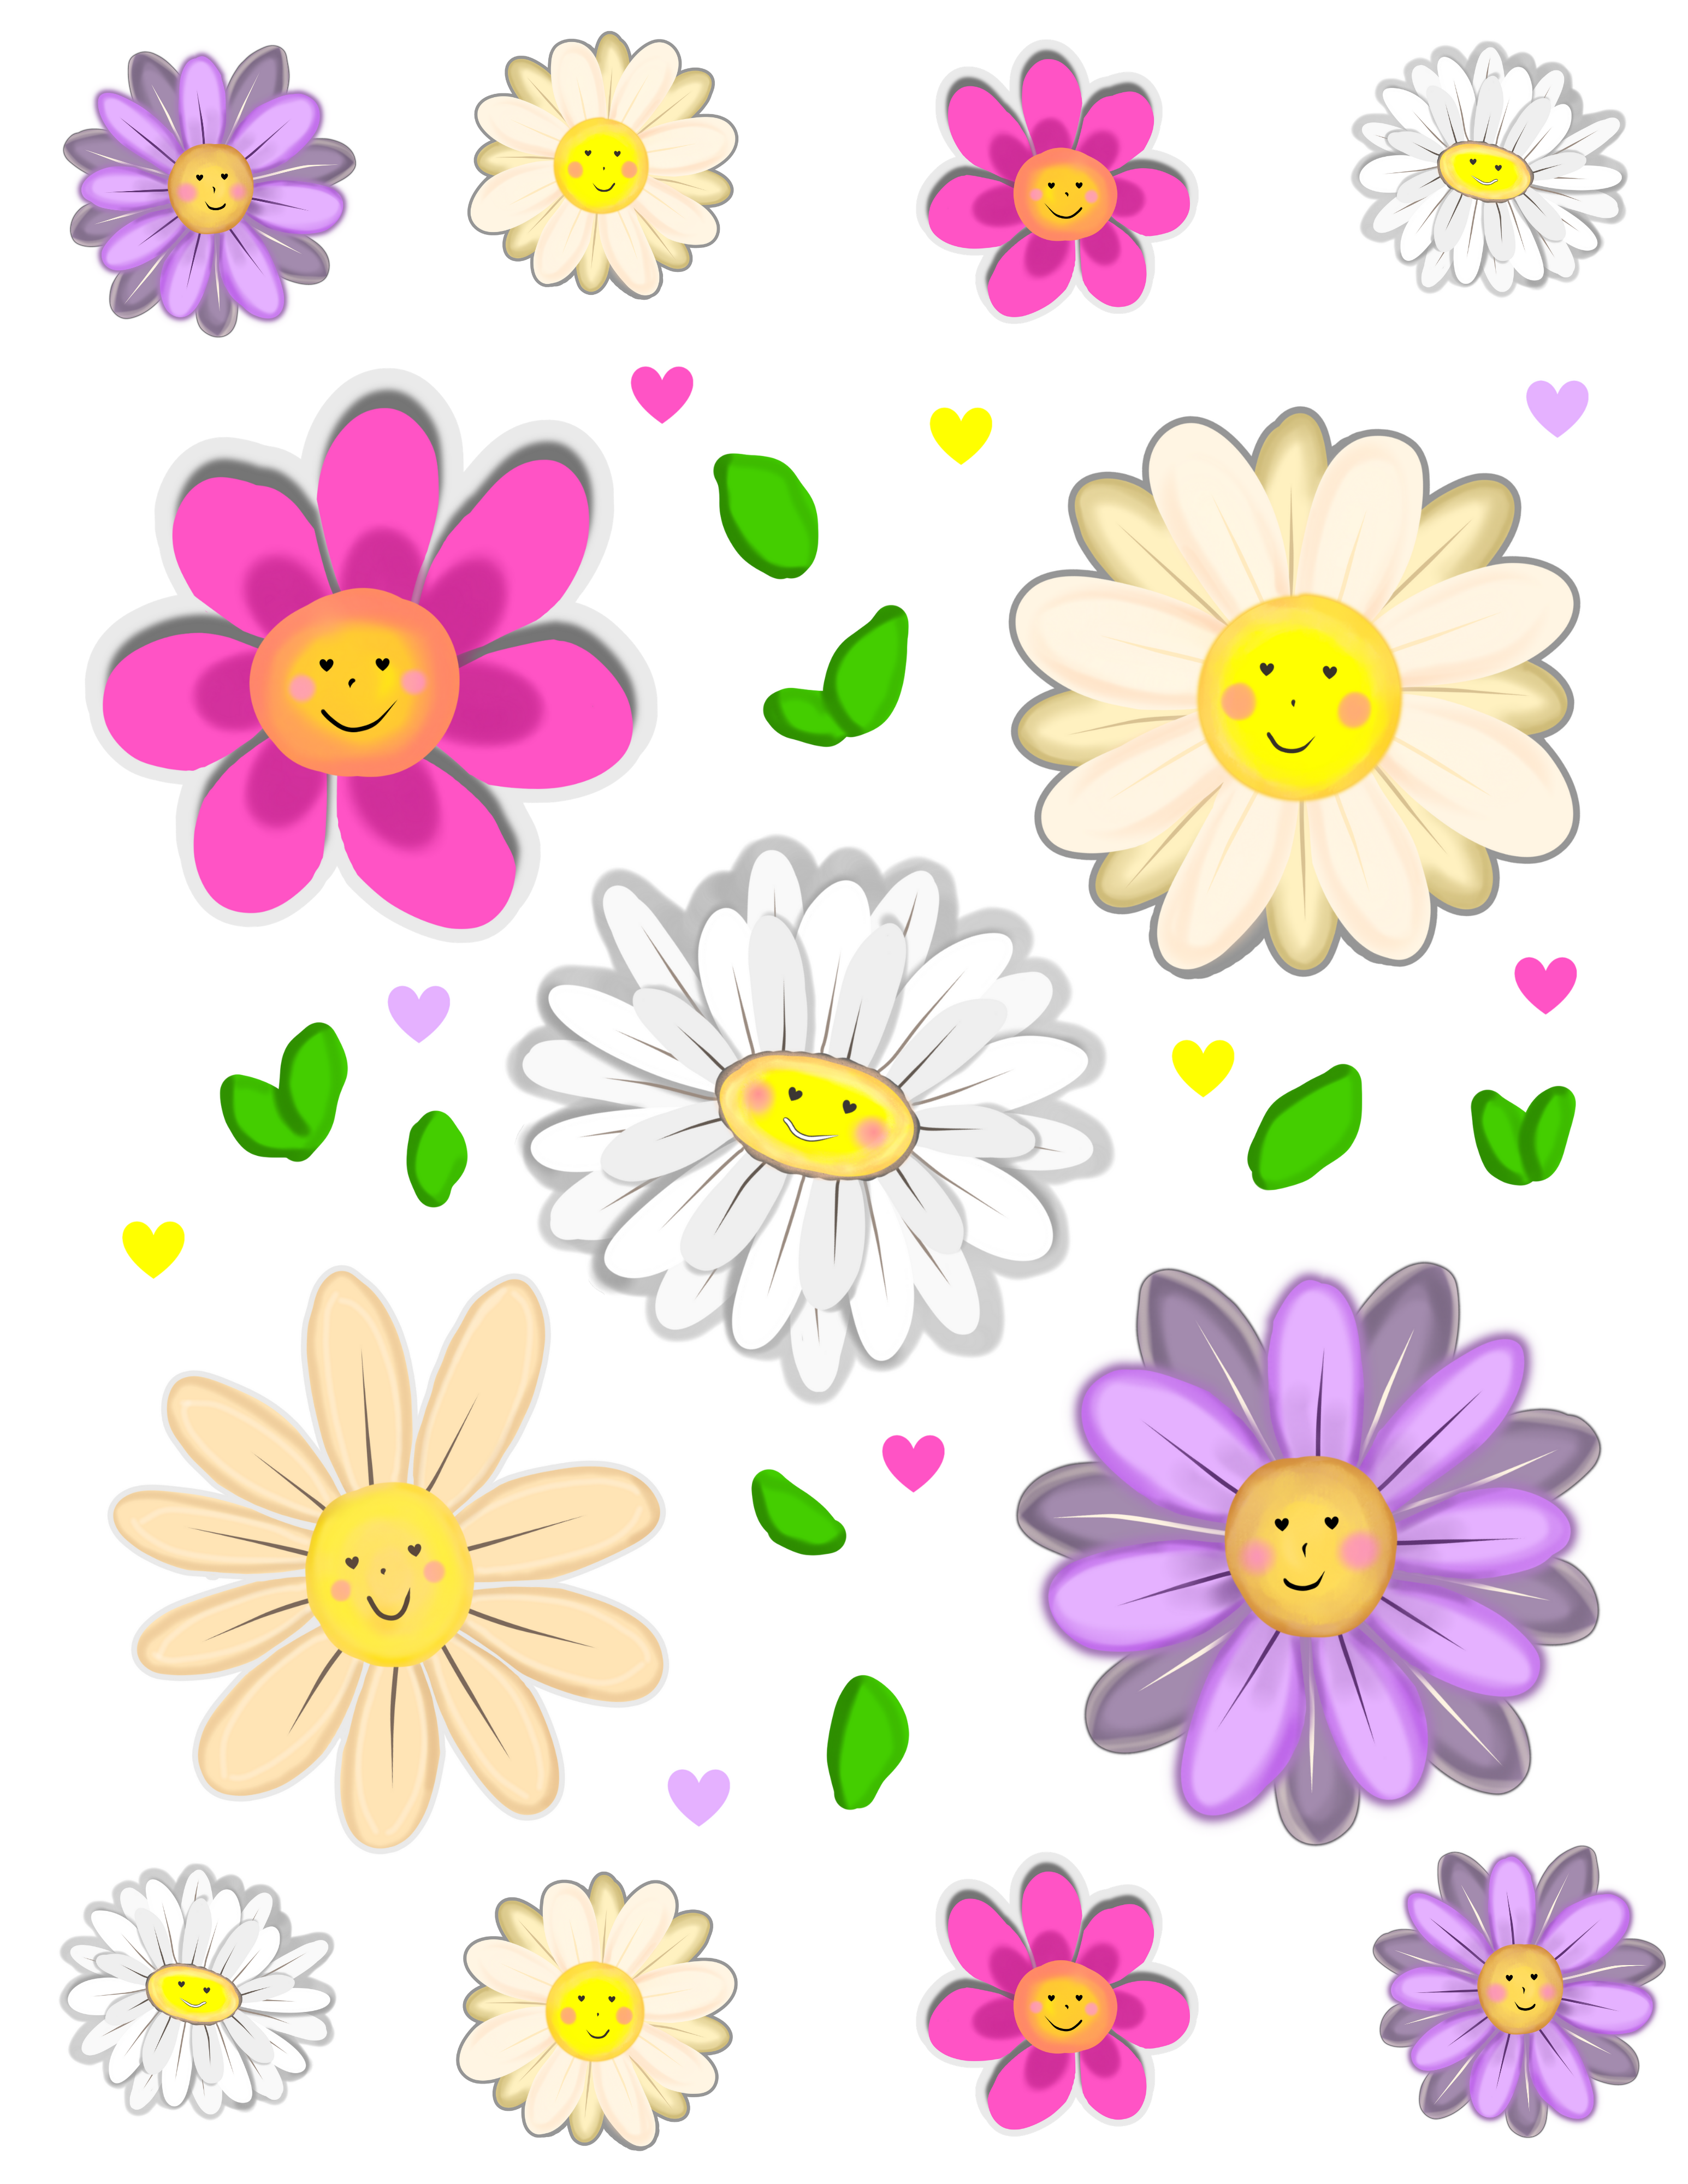 Cute Daisies - Hand drawn Daisy Sticker Sheet